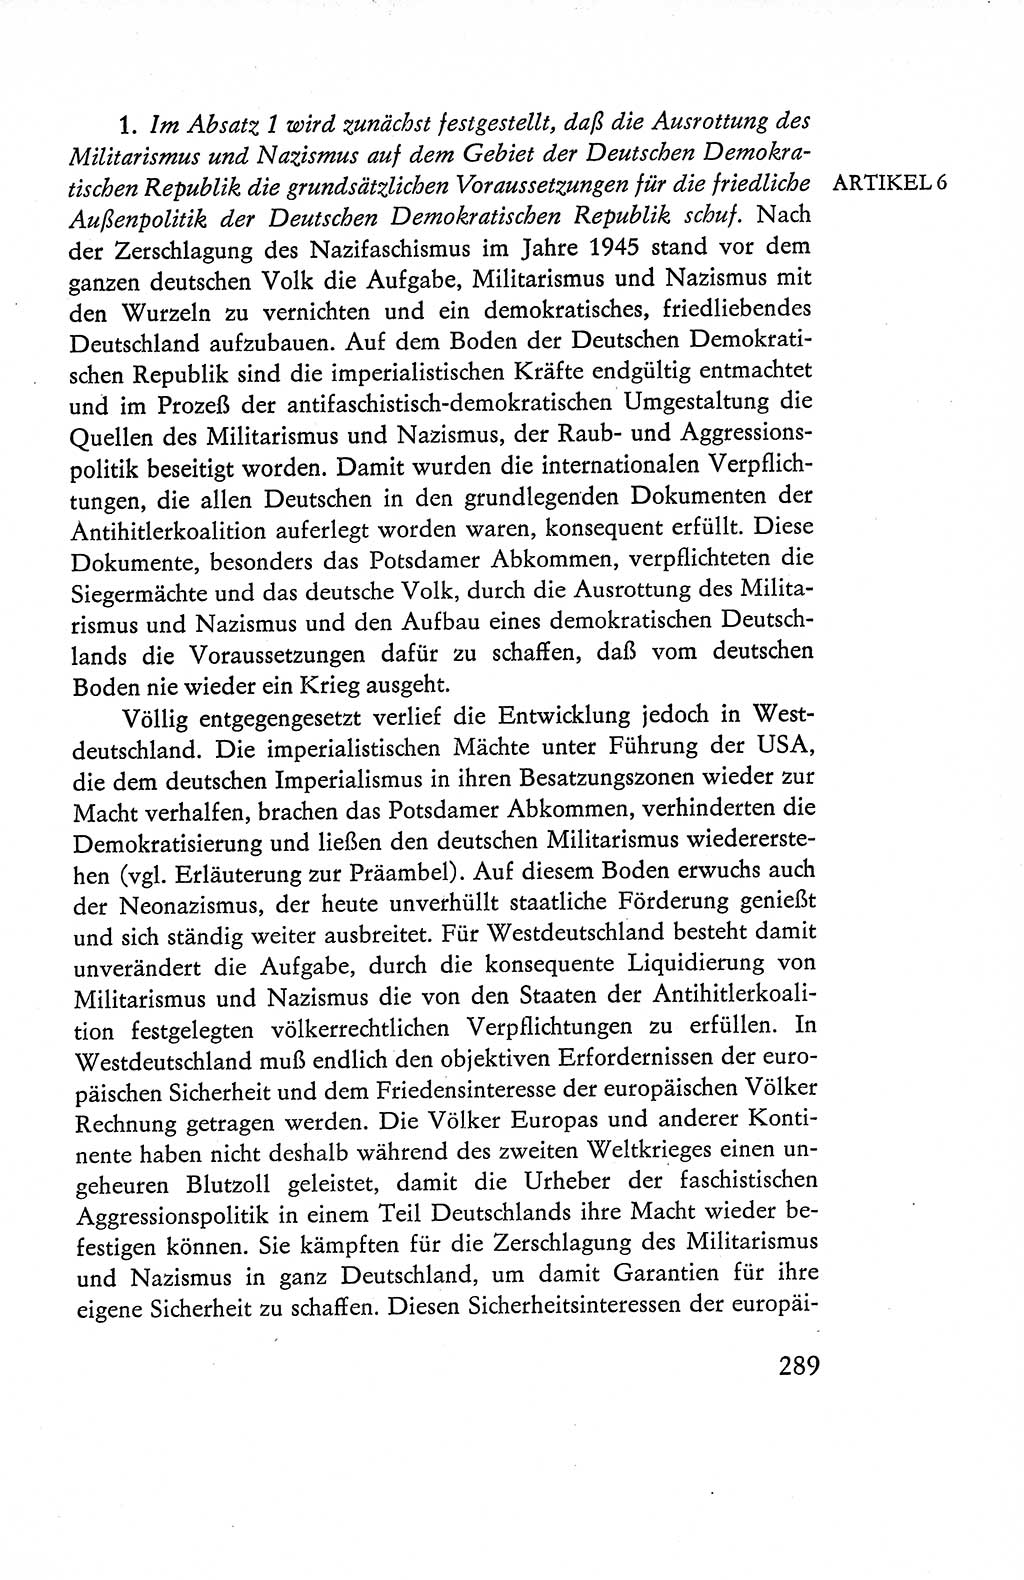 Verfassung der Deutschen Demokratischen Republik (DDR), Dokumente, Kommentar 1969, Band 1, Seite 289 (Verf. DDR Dok. Komm. 1969, Bd. 1, S. 289)